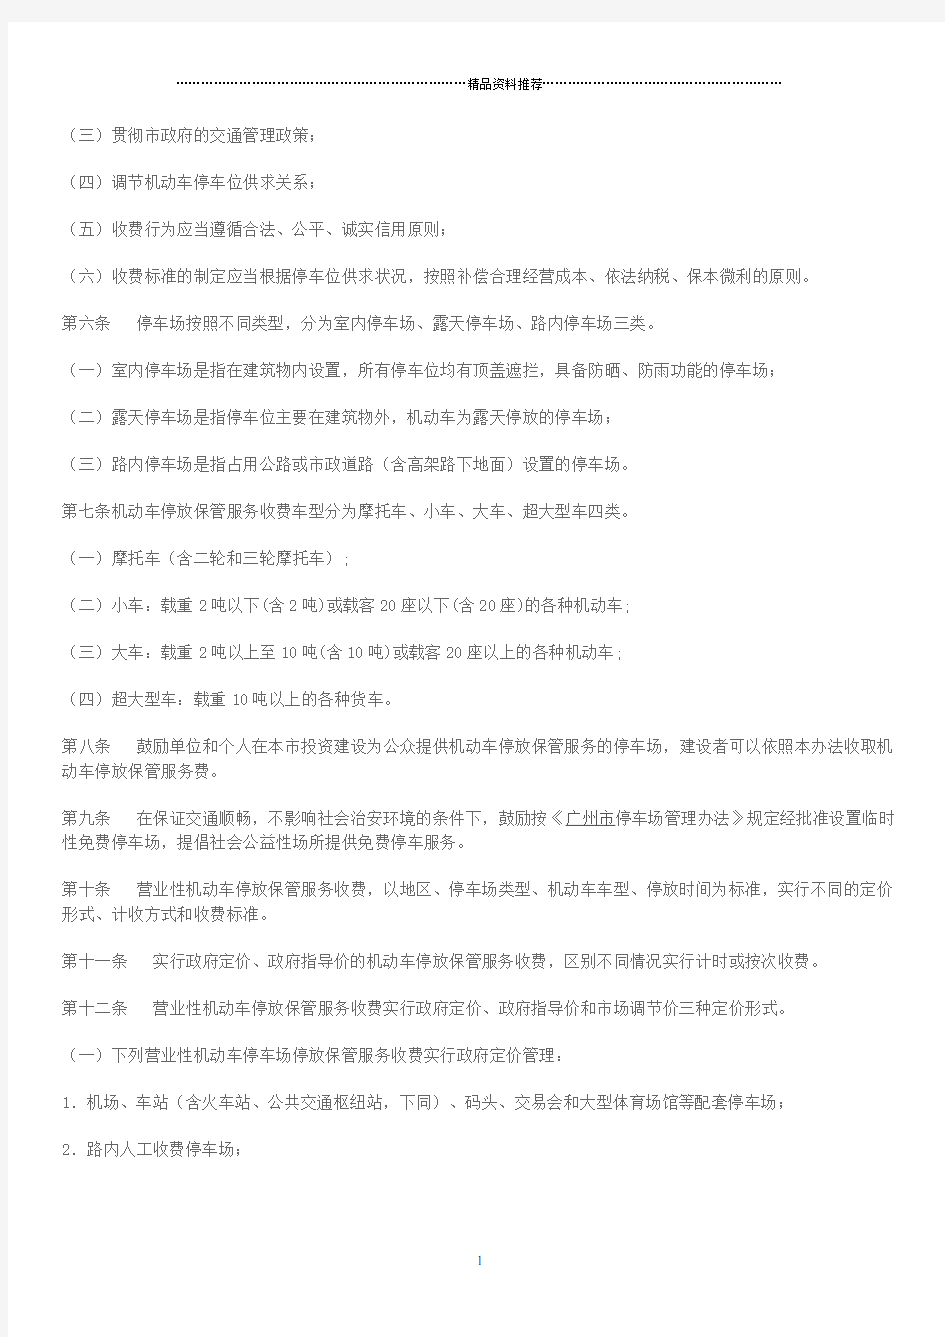 关于印发广州市机动车停放保管服务收费管理办法